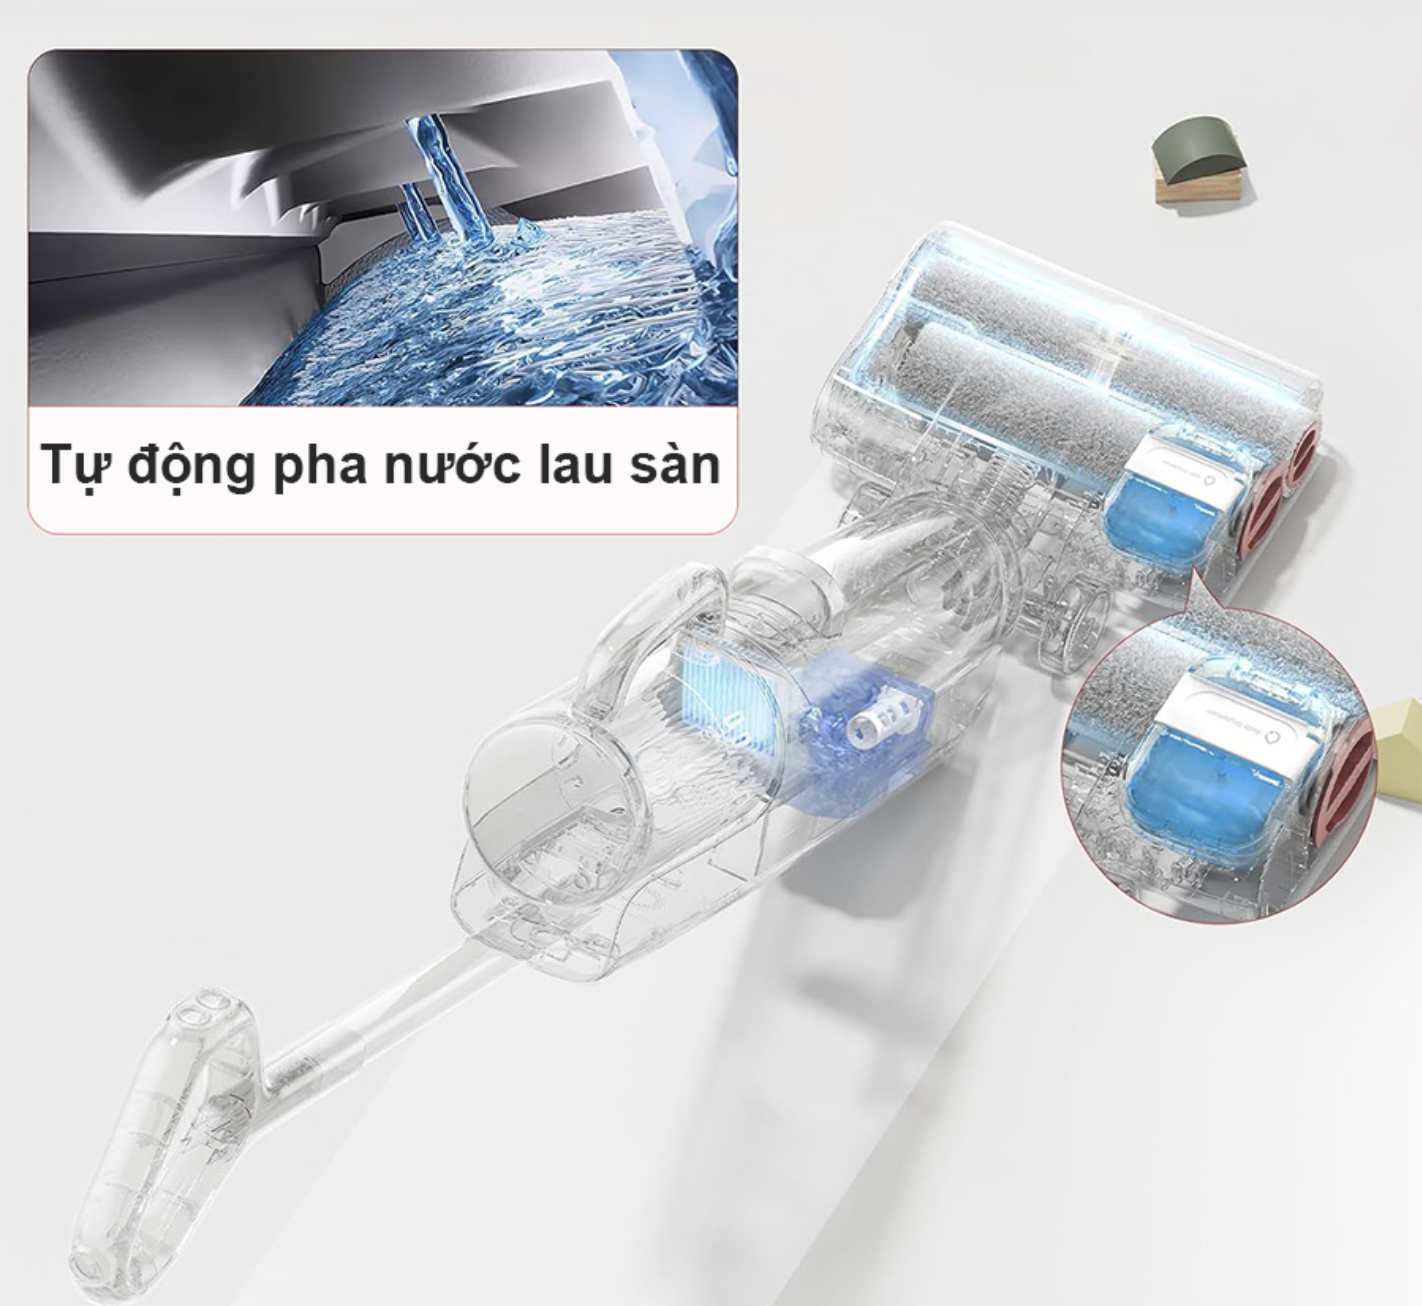 Máy Hút Bụi Lau Nhà Roborock Dyad Pro Combo Làm Sạch 4 Trong 1 Tự Động Giặt Sấy Kết Nối App Thông Minh - Hàng Chính Hãng